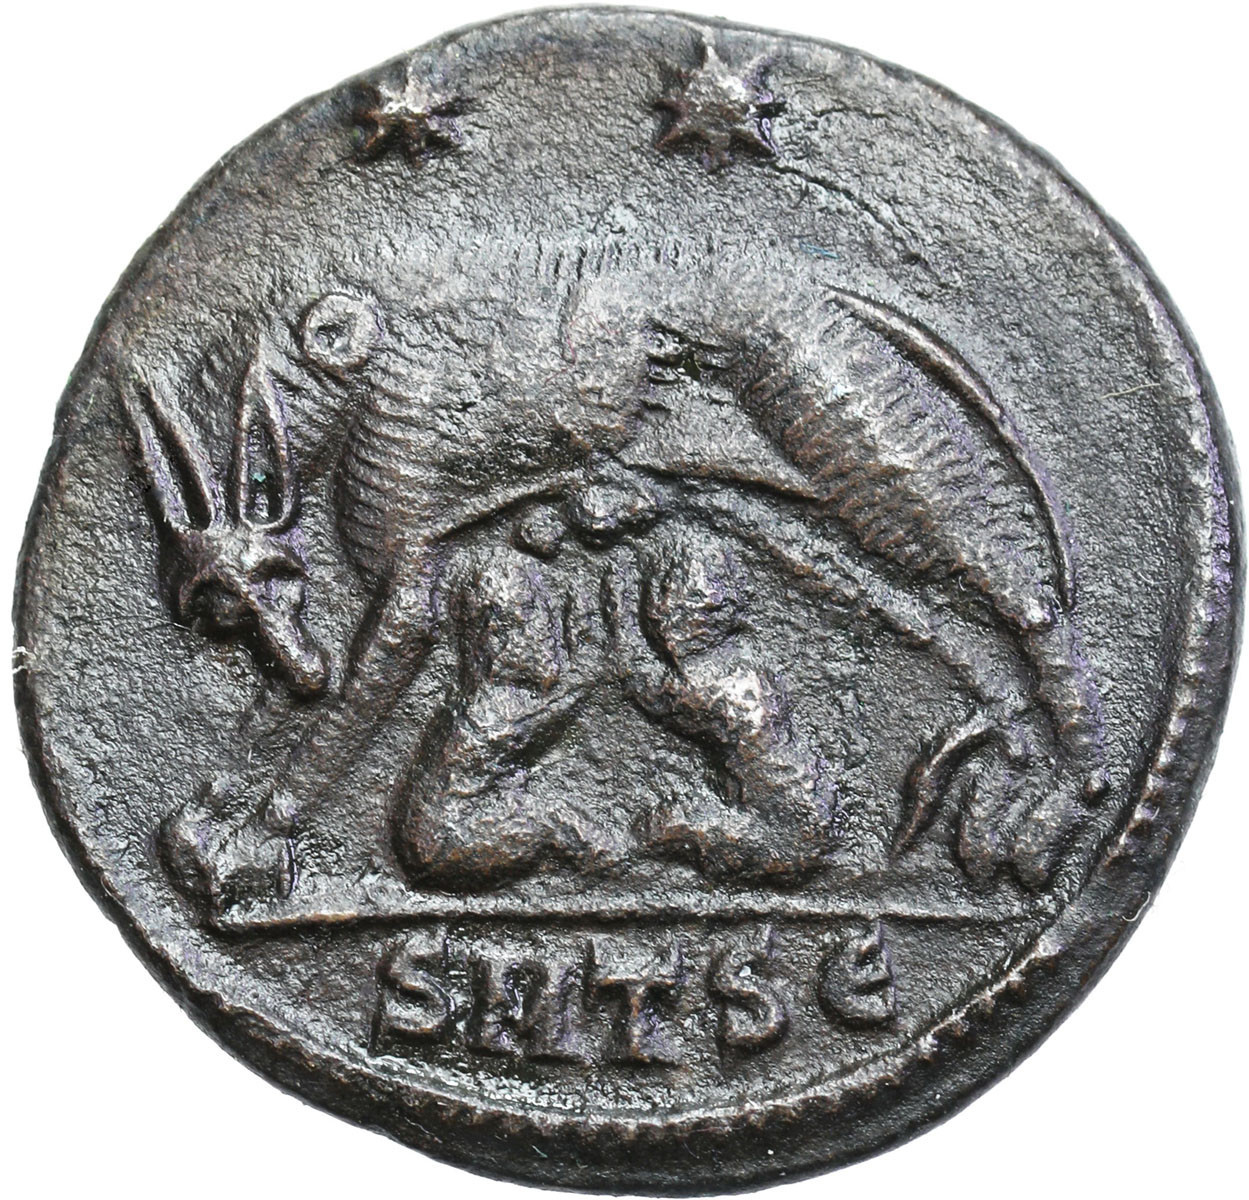 Rzym, Follis, Konstantyn Wielki 307 – 337 n. e., Tesaloniki